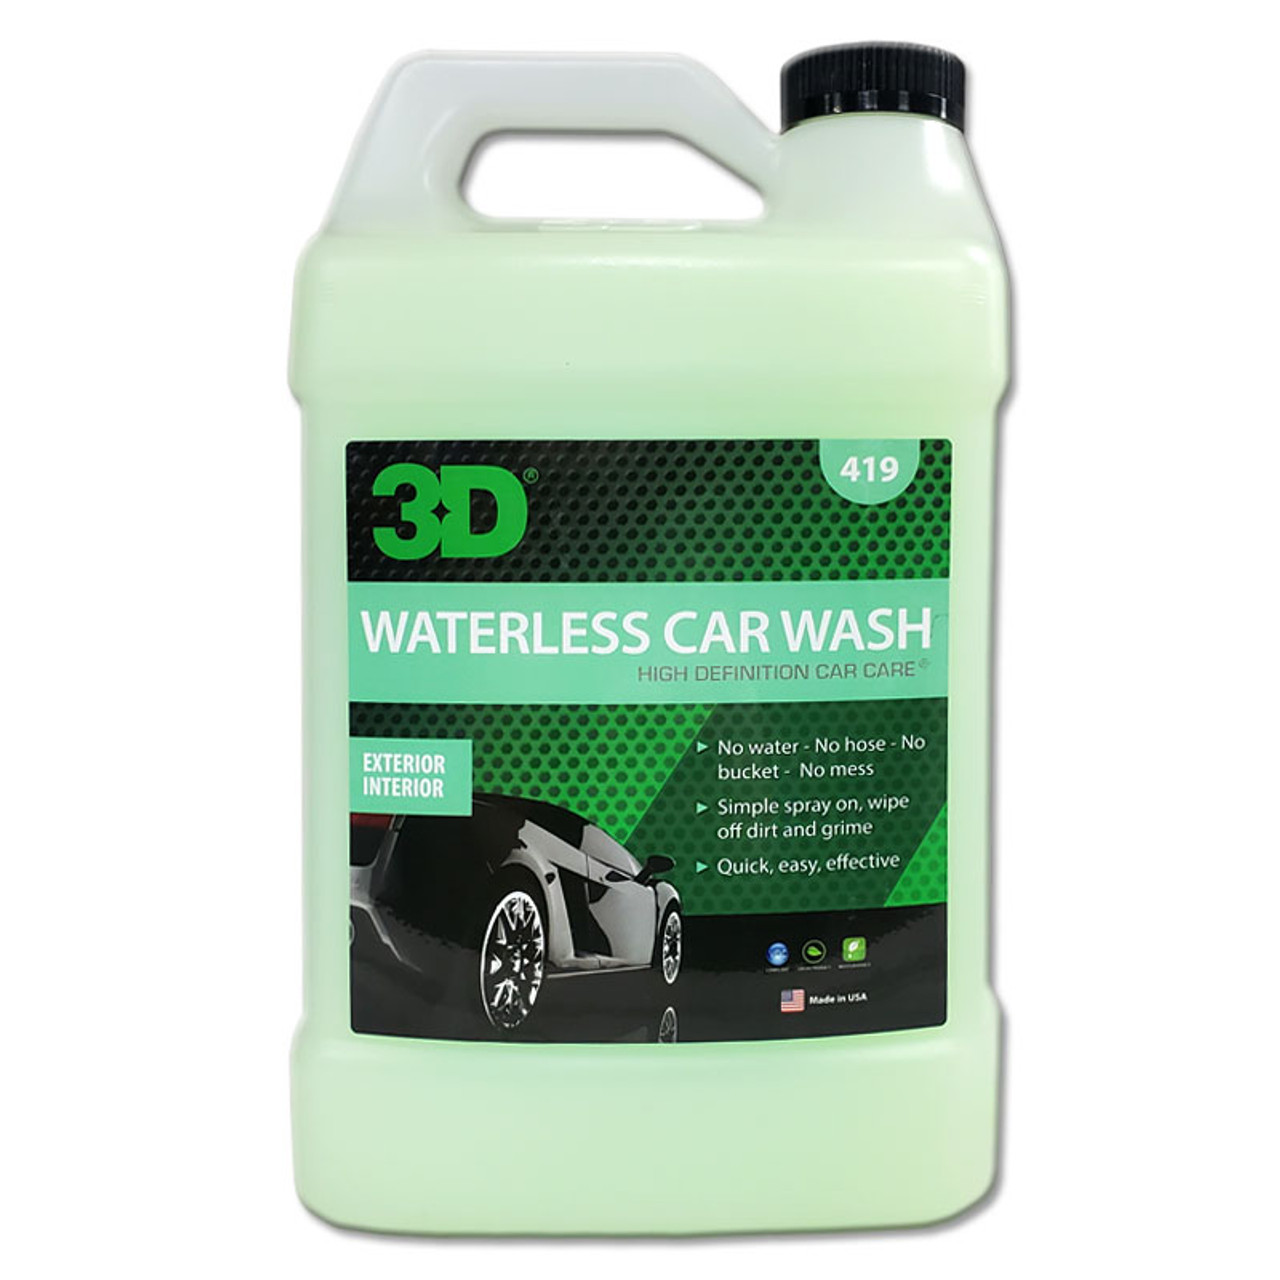 3D Waterless Car Wash 16 oz.